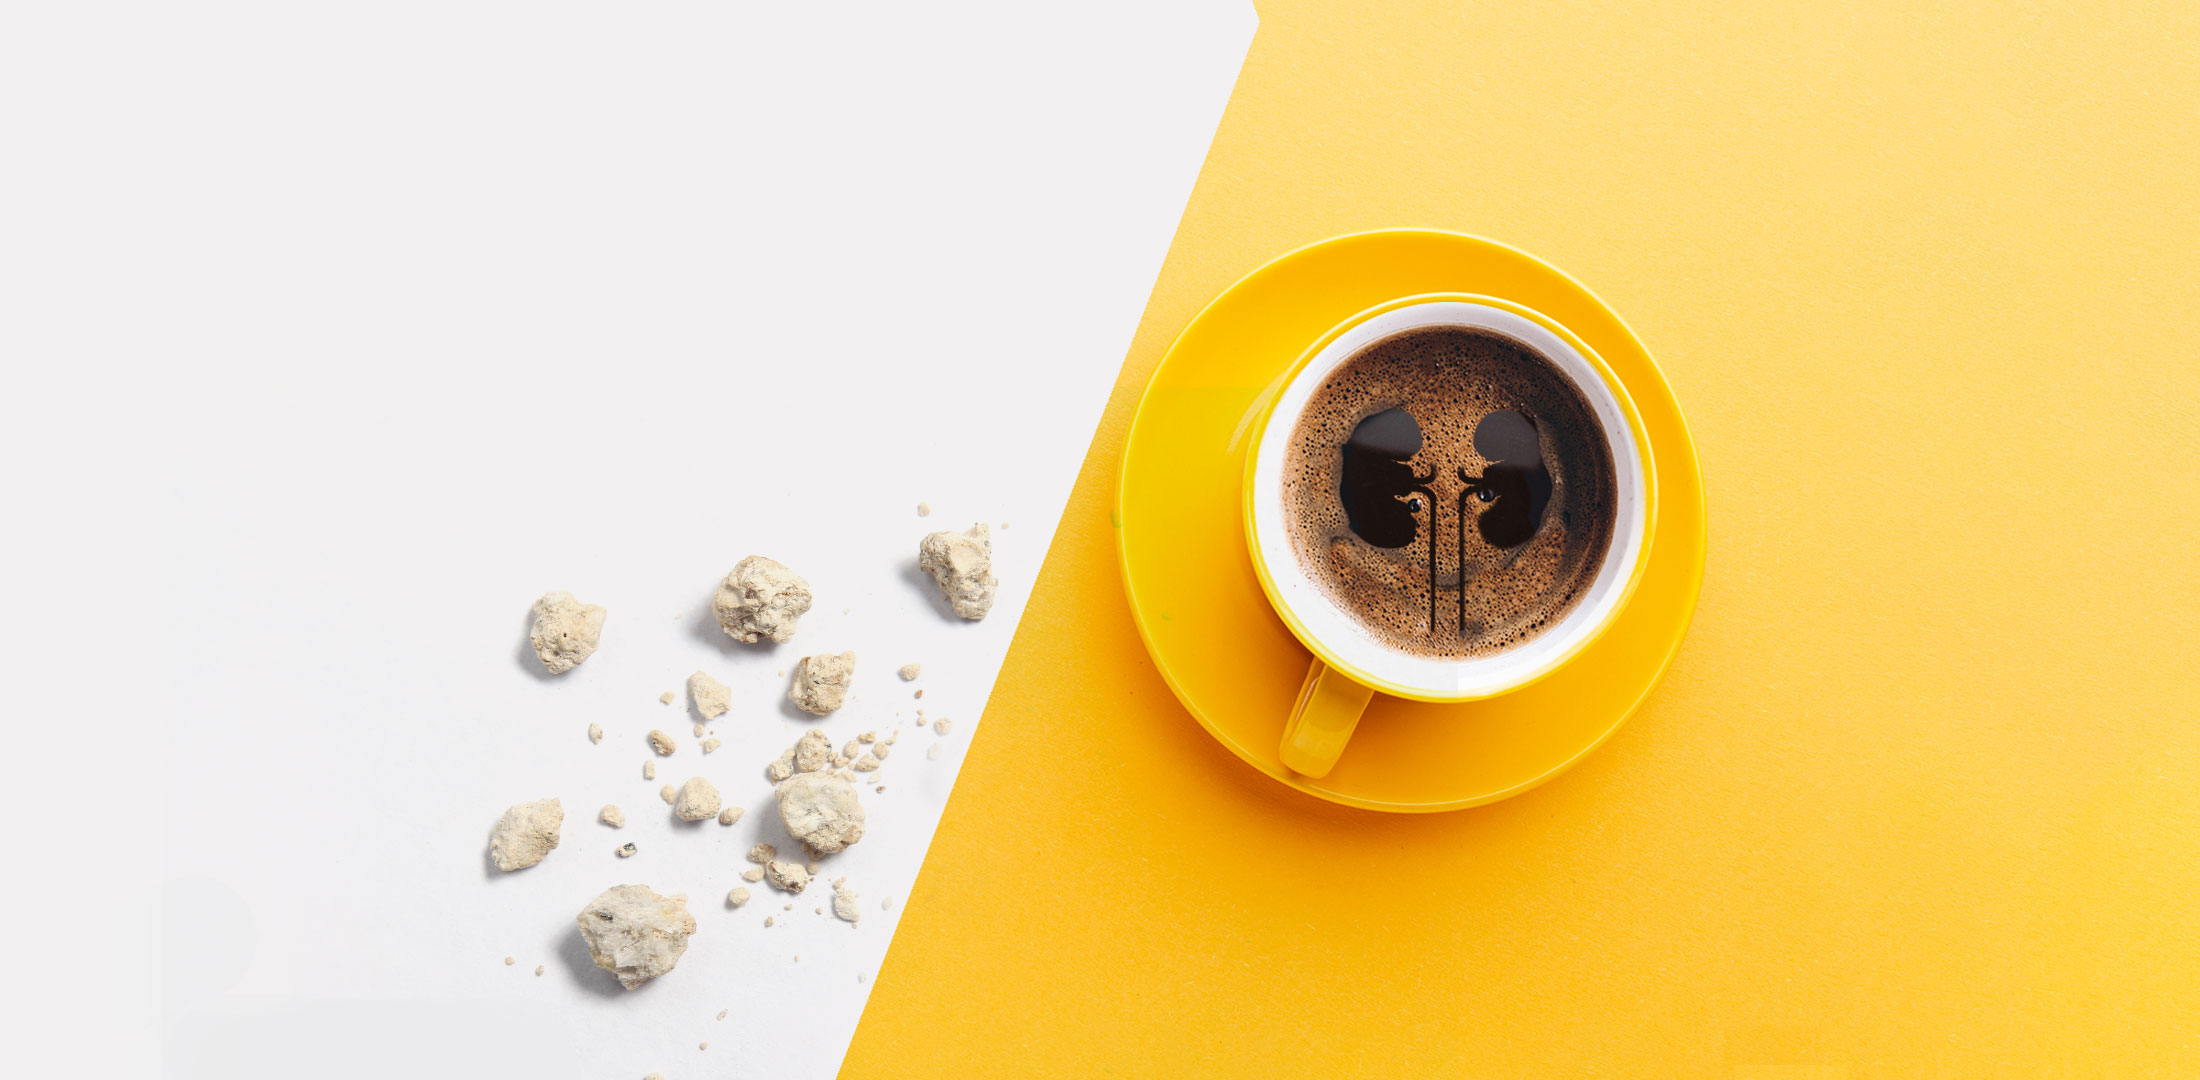 Kahve böbrek taşı yapar mı | bobrek-tasi-holep-uroloji-doktoru-kadir-tepeler-tas-hastalikları